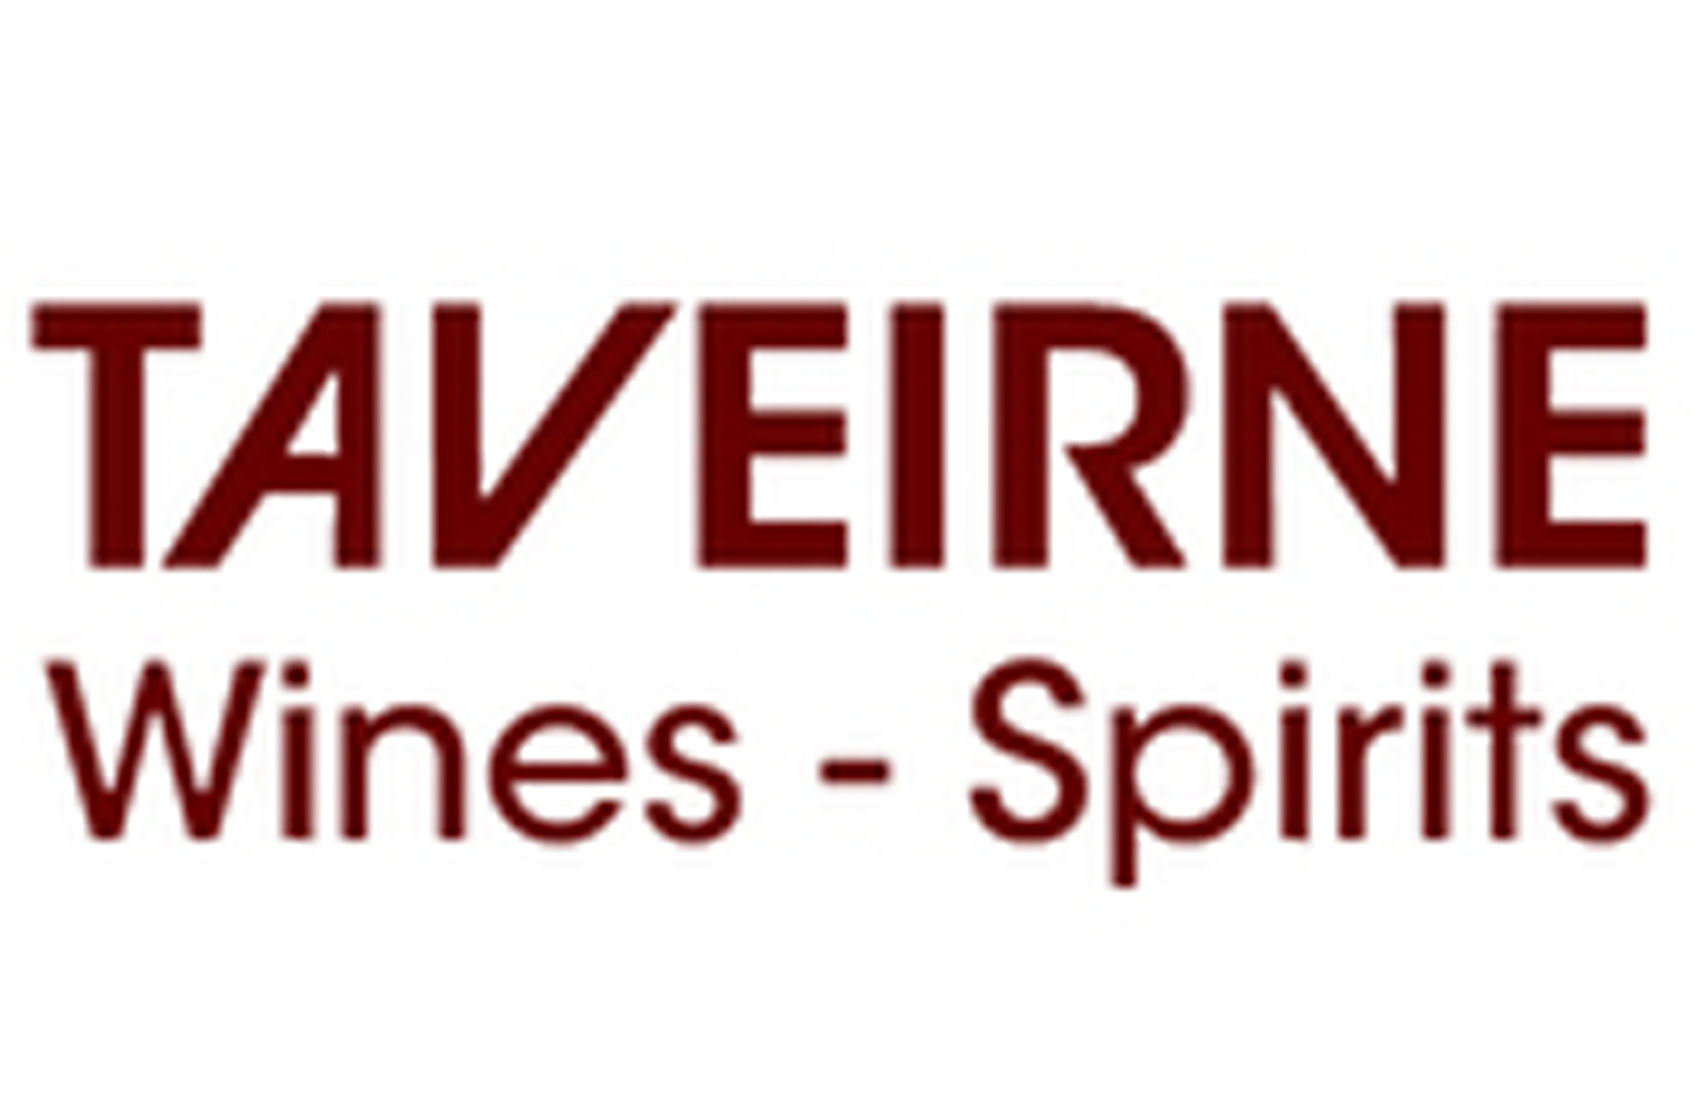 Taveirne Wines-Spirits